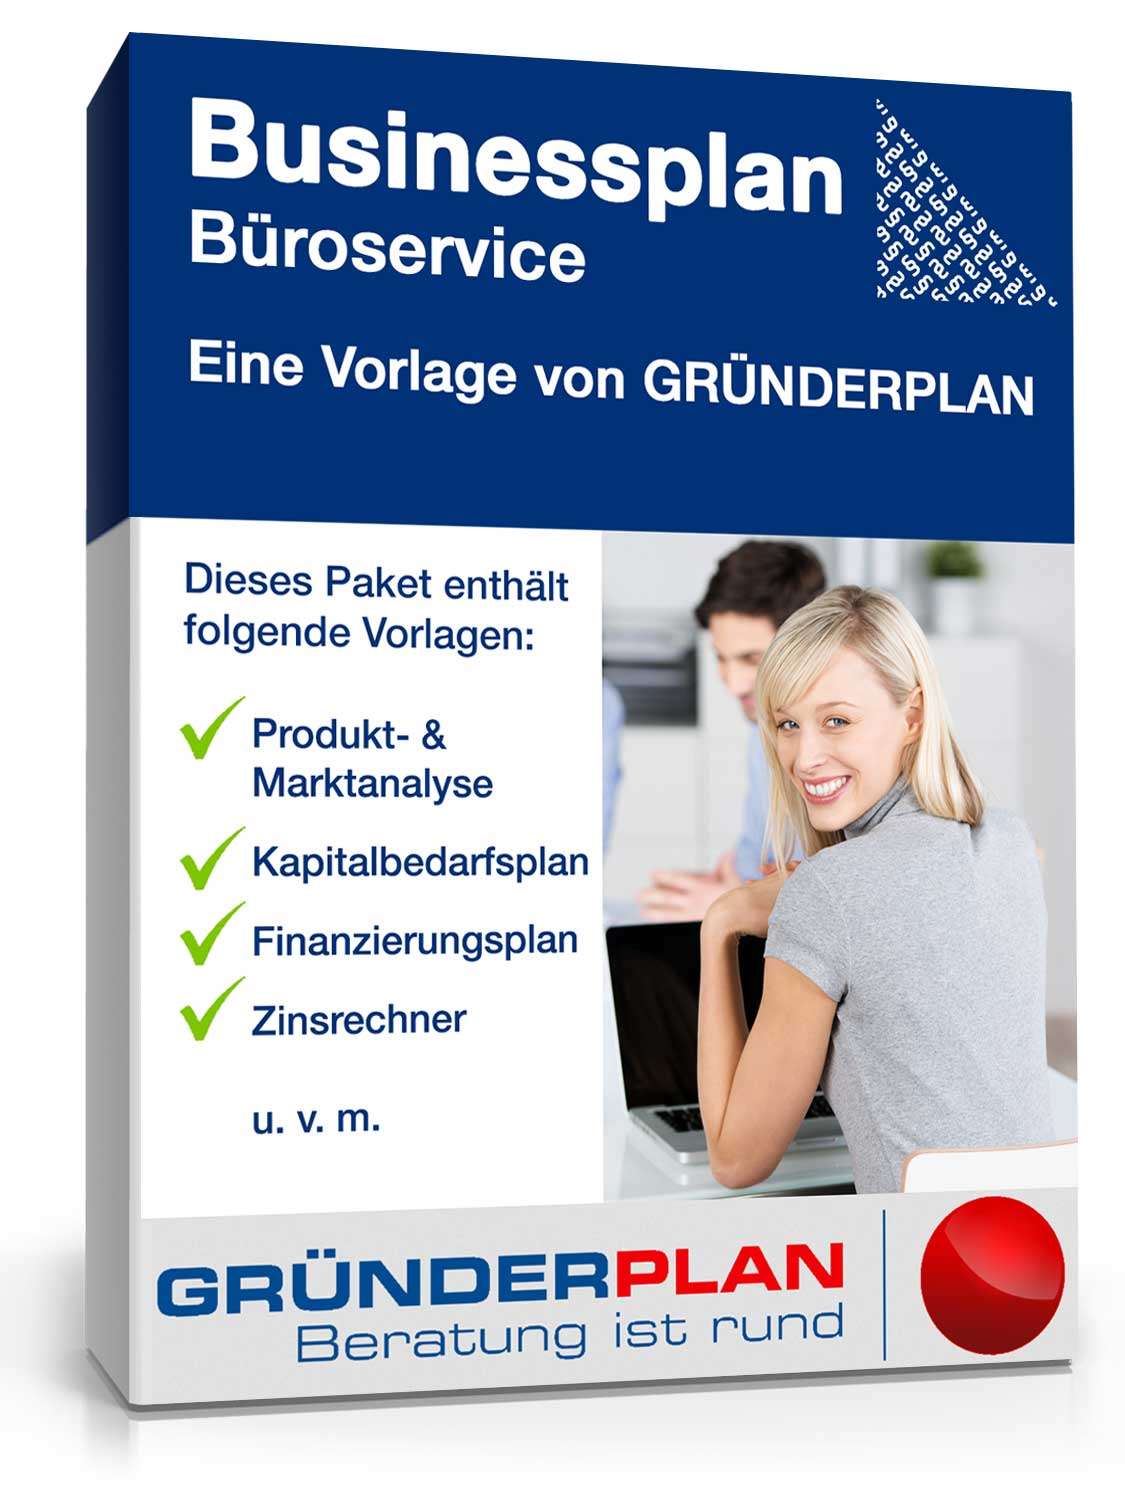 Hauptbild des Produkts: Businessplan Büroservice von Gründerplan